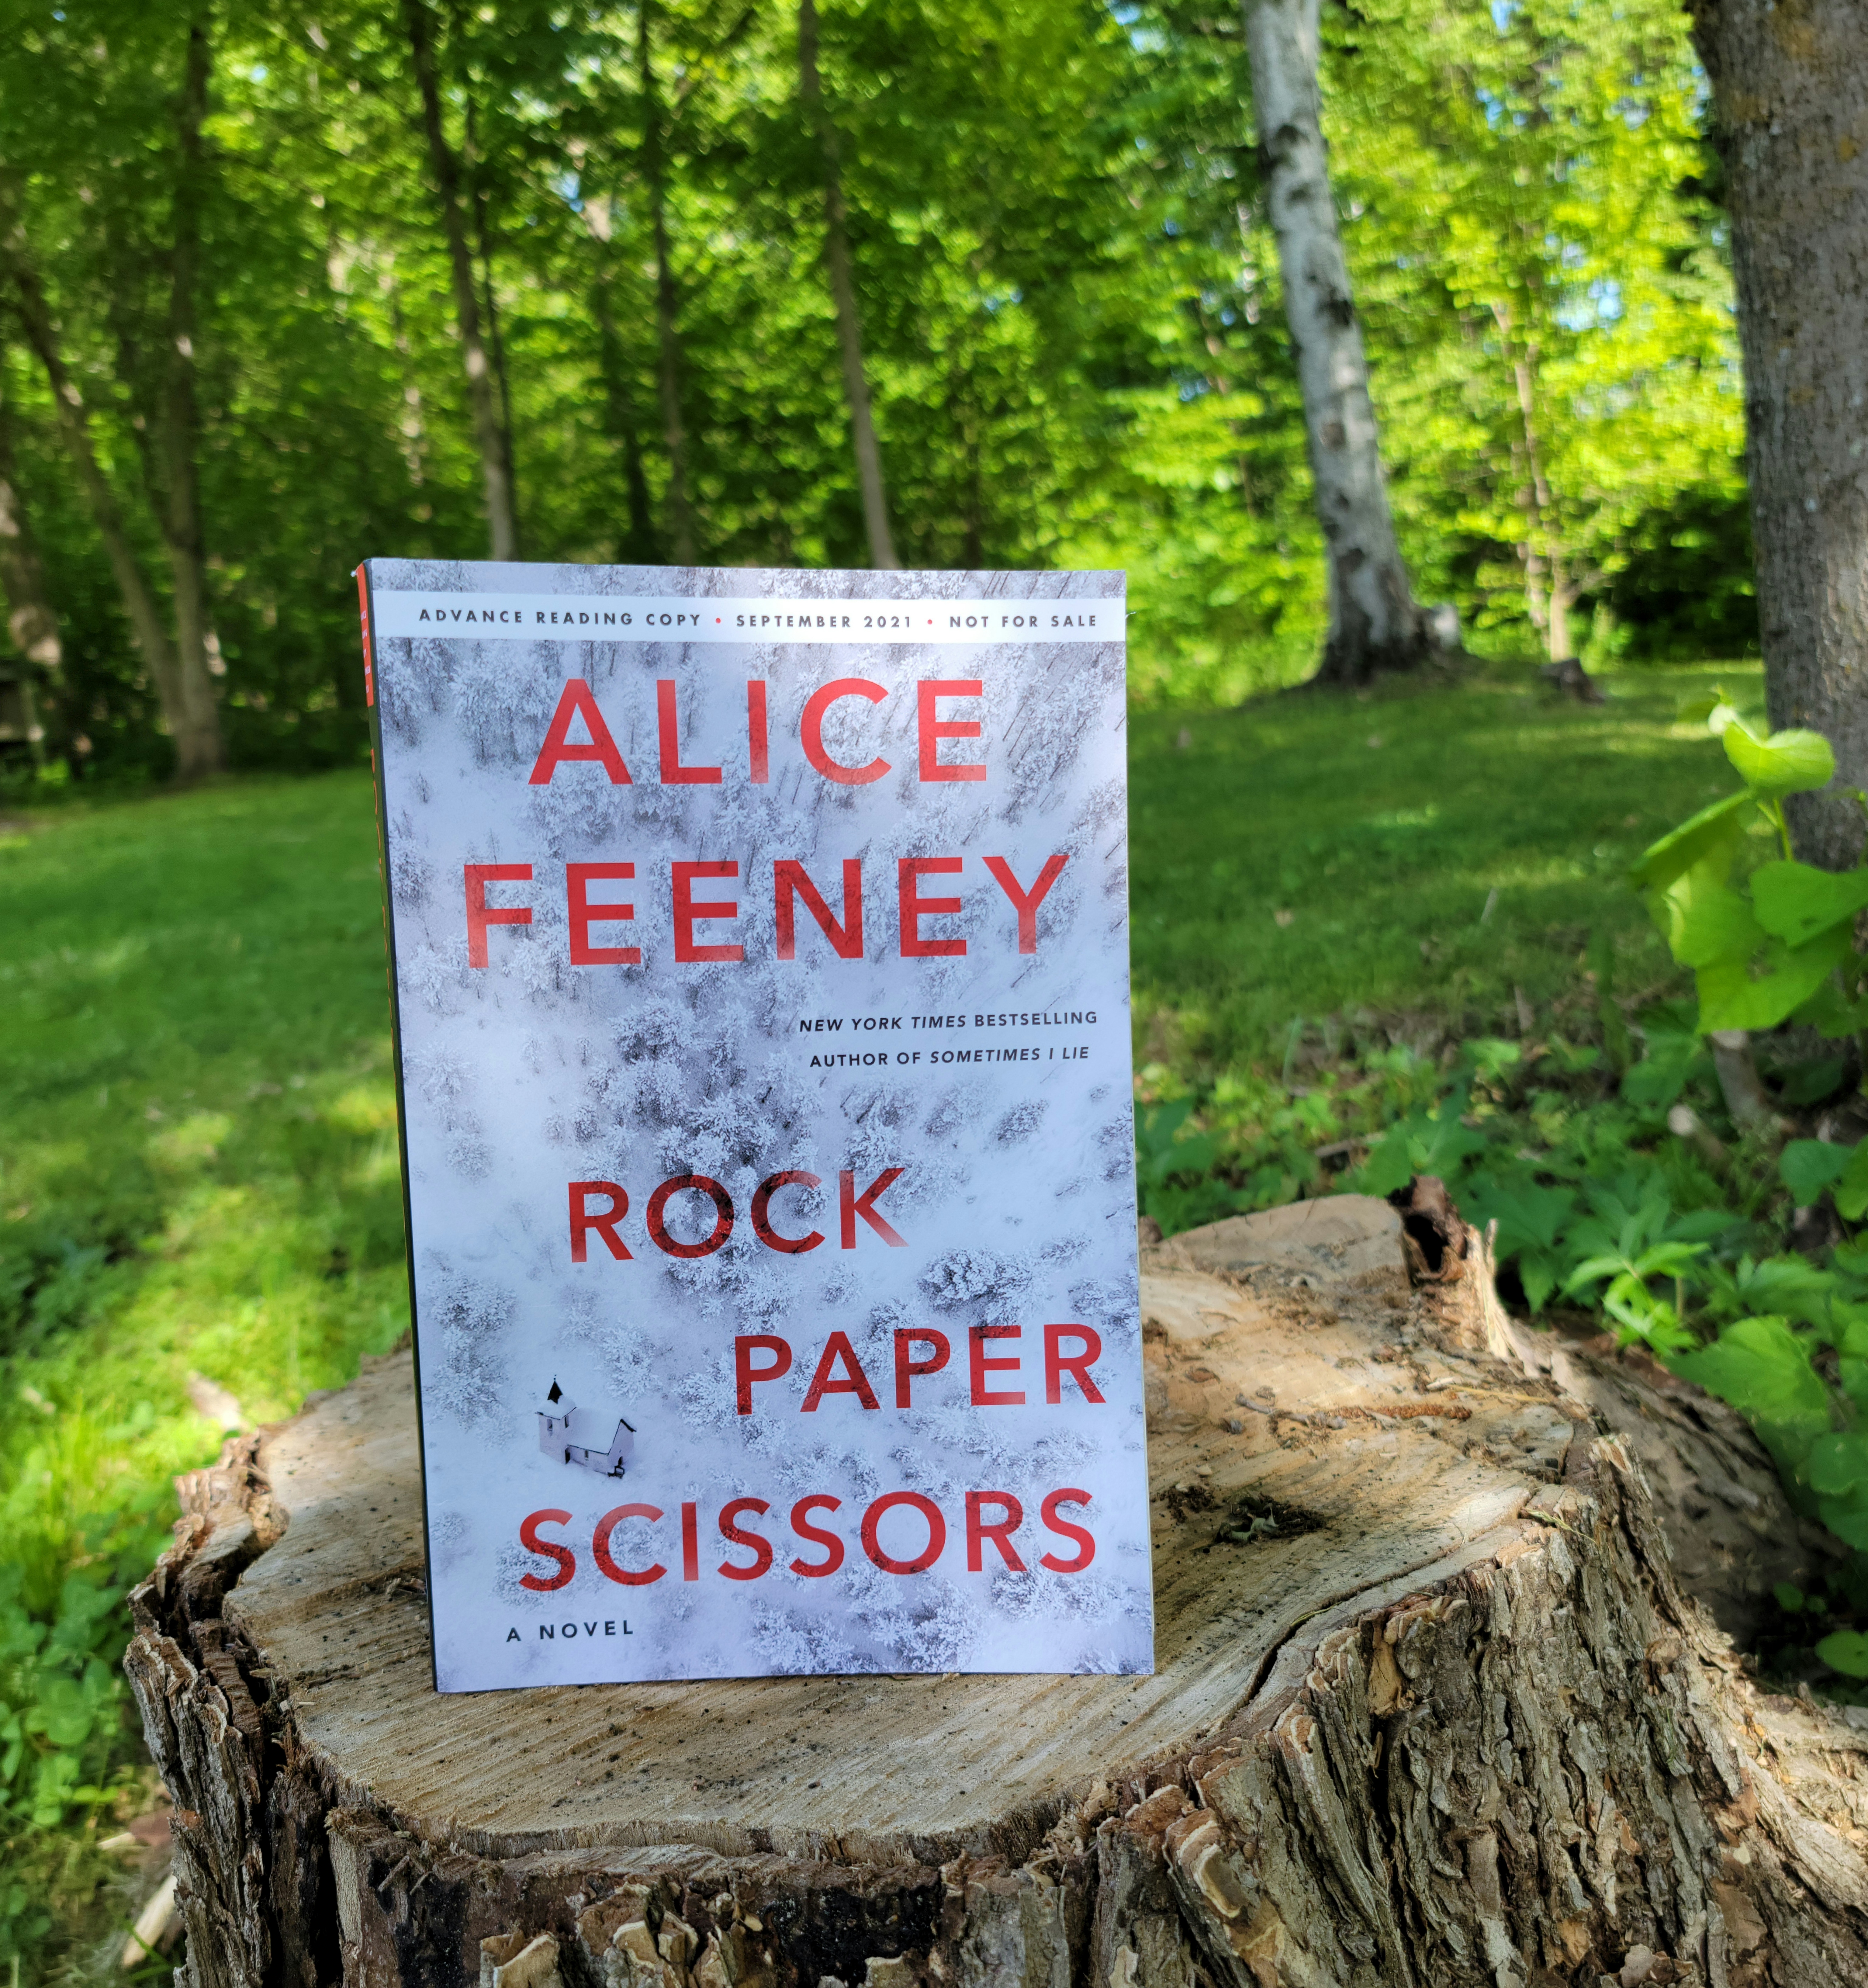 Rock Paper Scissors: A Novel by Alice Feeney, Paperback